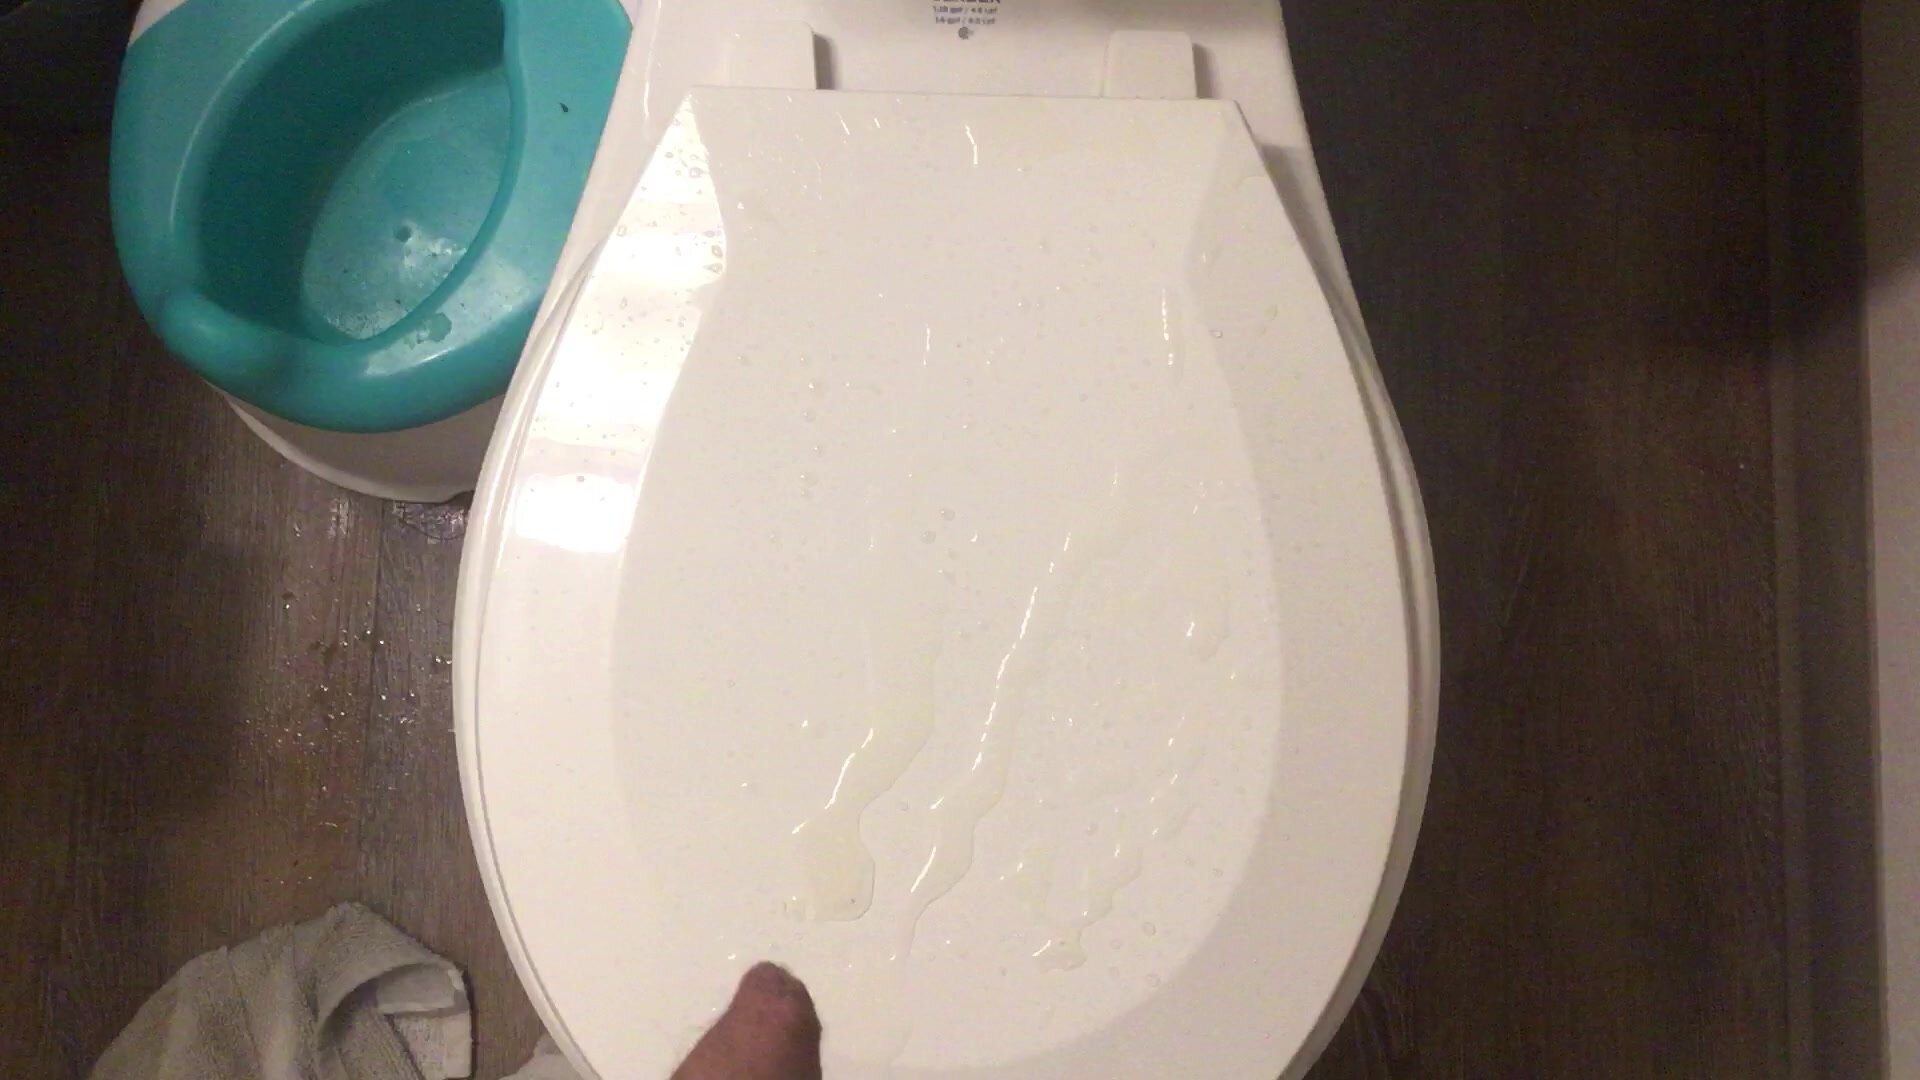 Peeing on the Toilet Seat